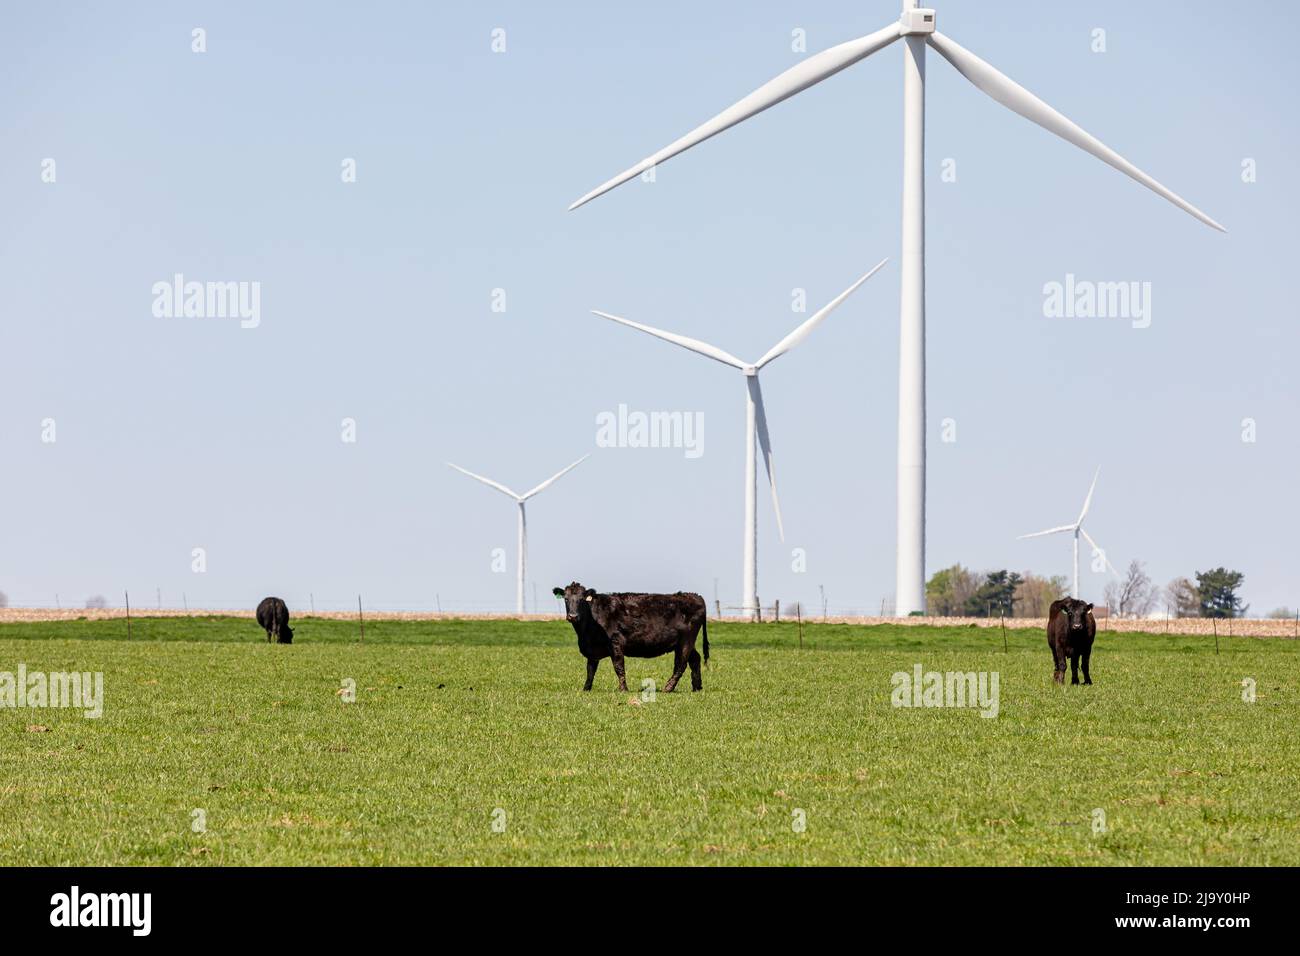 Vacas pastando en pastos verdes con turbinas eólicas en el fondo. Concepto de agricultura, energía renovable limpia y gas metano de efecto invernadero. Foto de stock